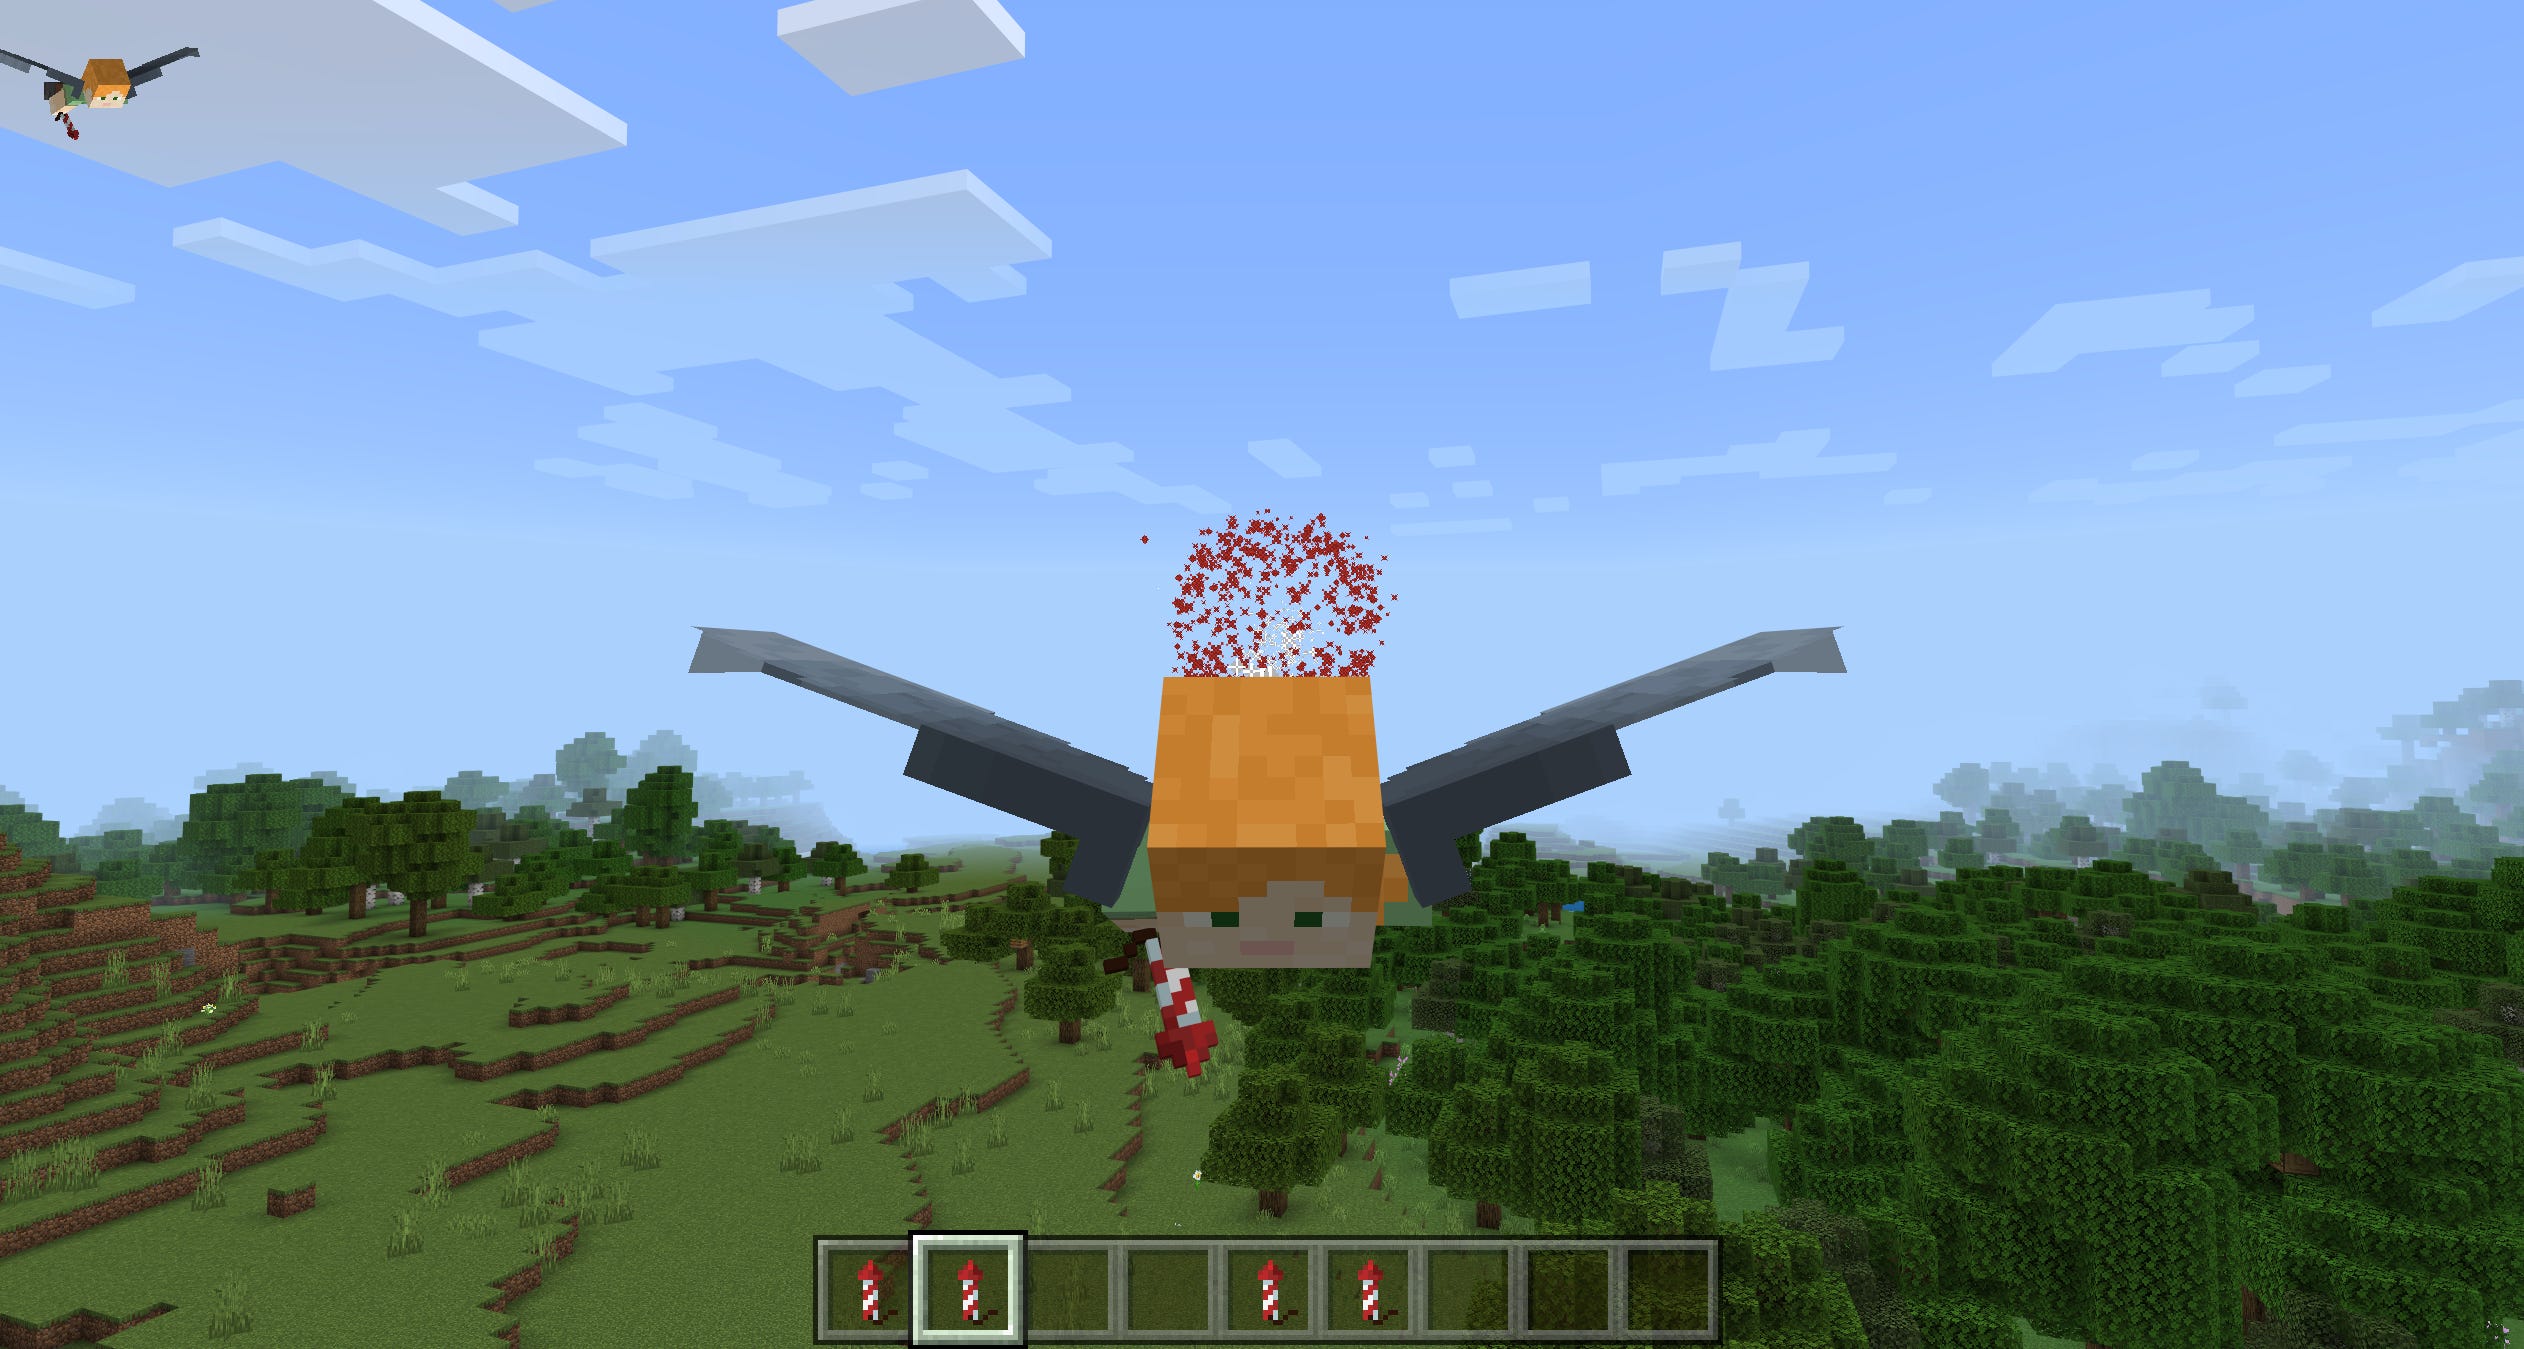 Un giocatore di Minecraft che vola usando l'oggetto Elytra, con un fuoco d'artificio che esplode dietro di loro.